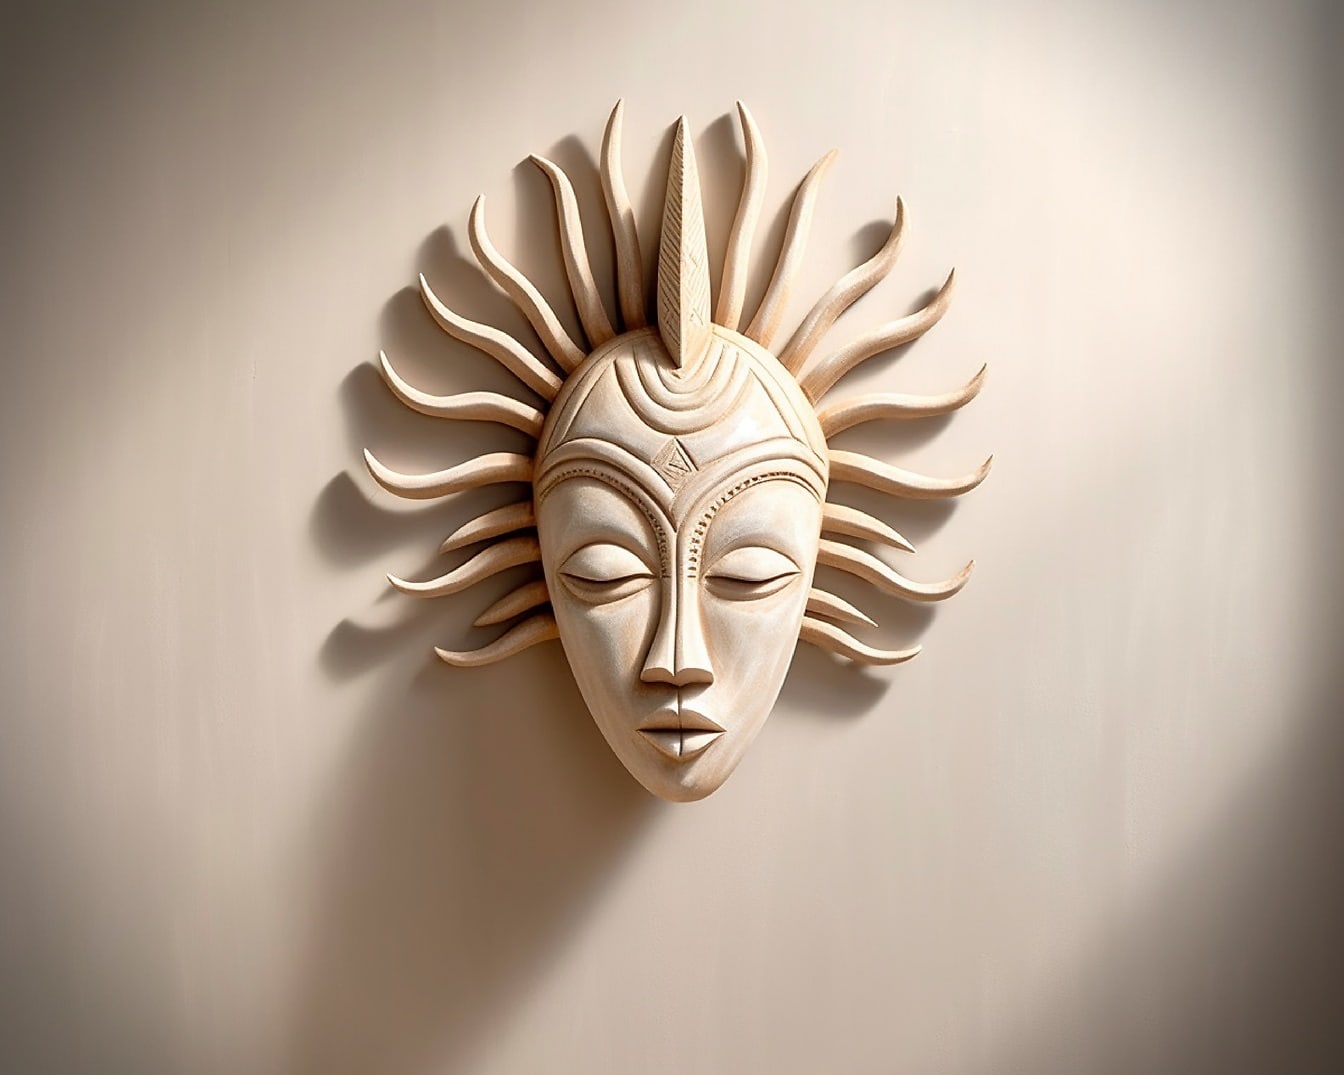 Ručně vyráběné umělecké dílo s obličejovou maskou v africkém stylu